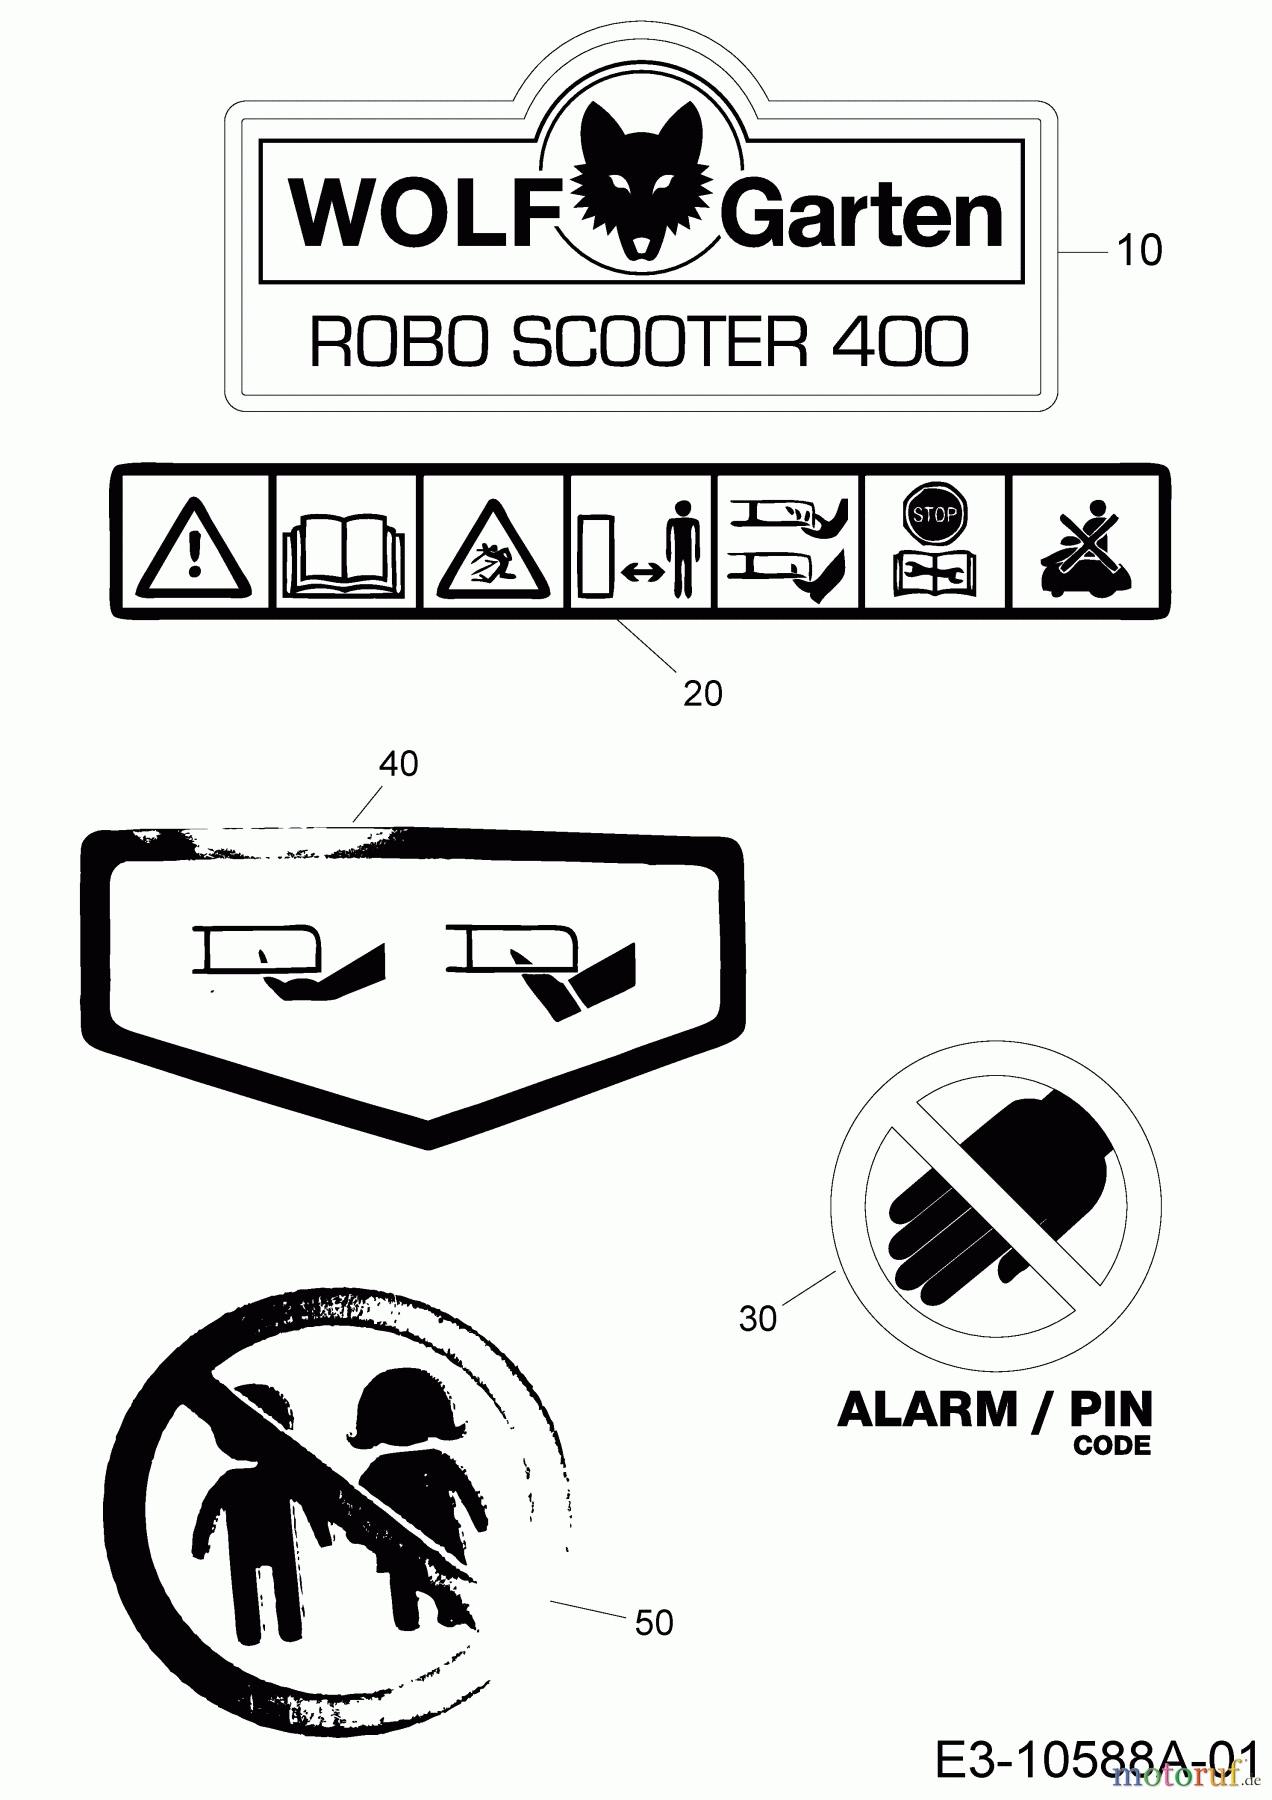  Wolf-Garten Mähroboter Robo Scooter 400 18AO04LF650  (2015) Aufkleber